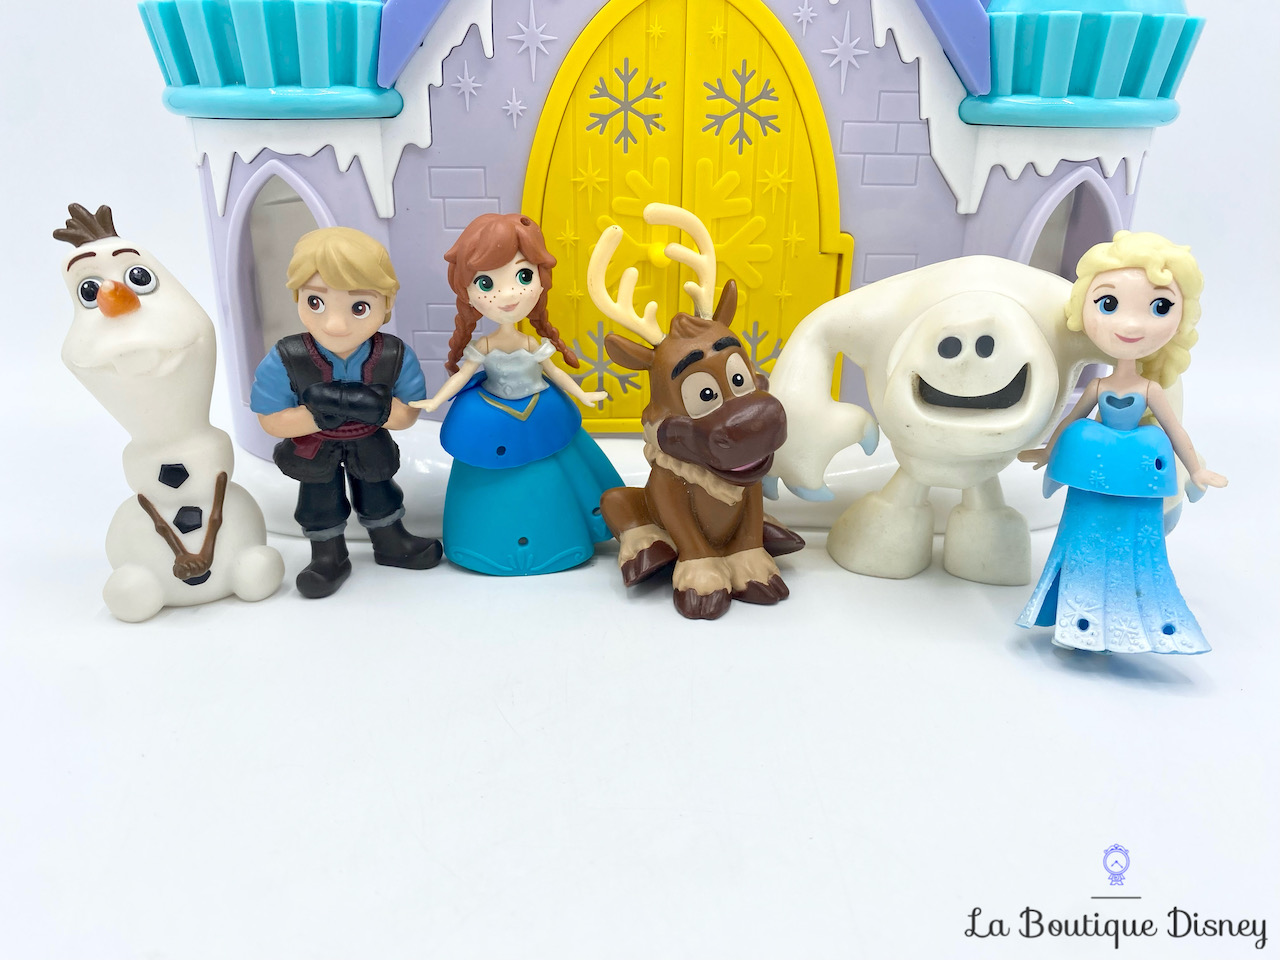 Jouet Figurines Château Little Kingdom Amis des neiges La reine des neiges  Disney Frozen Hasbro Frozen polly clip Ensemble de jeu sonore